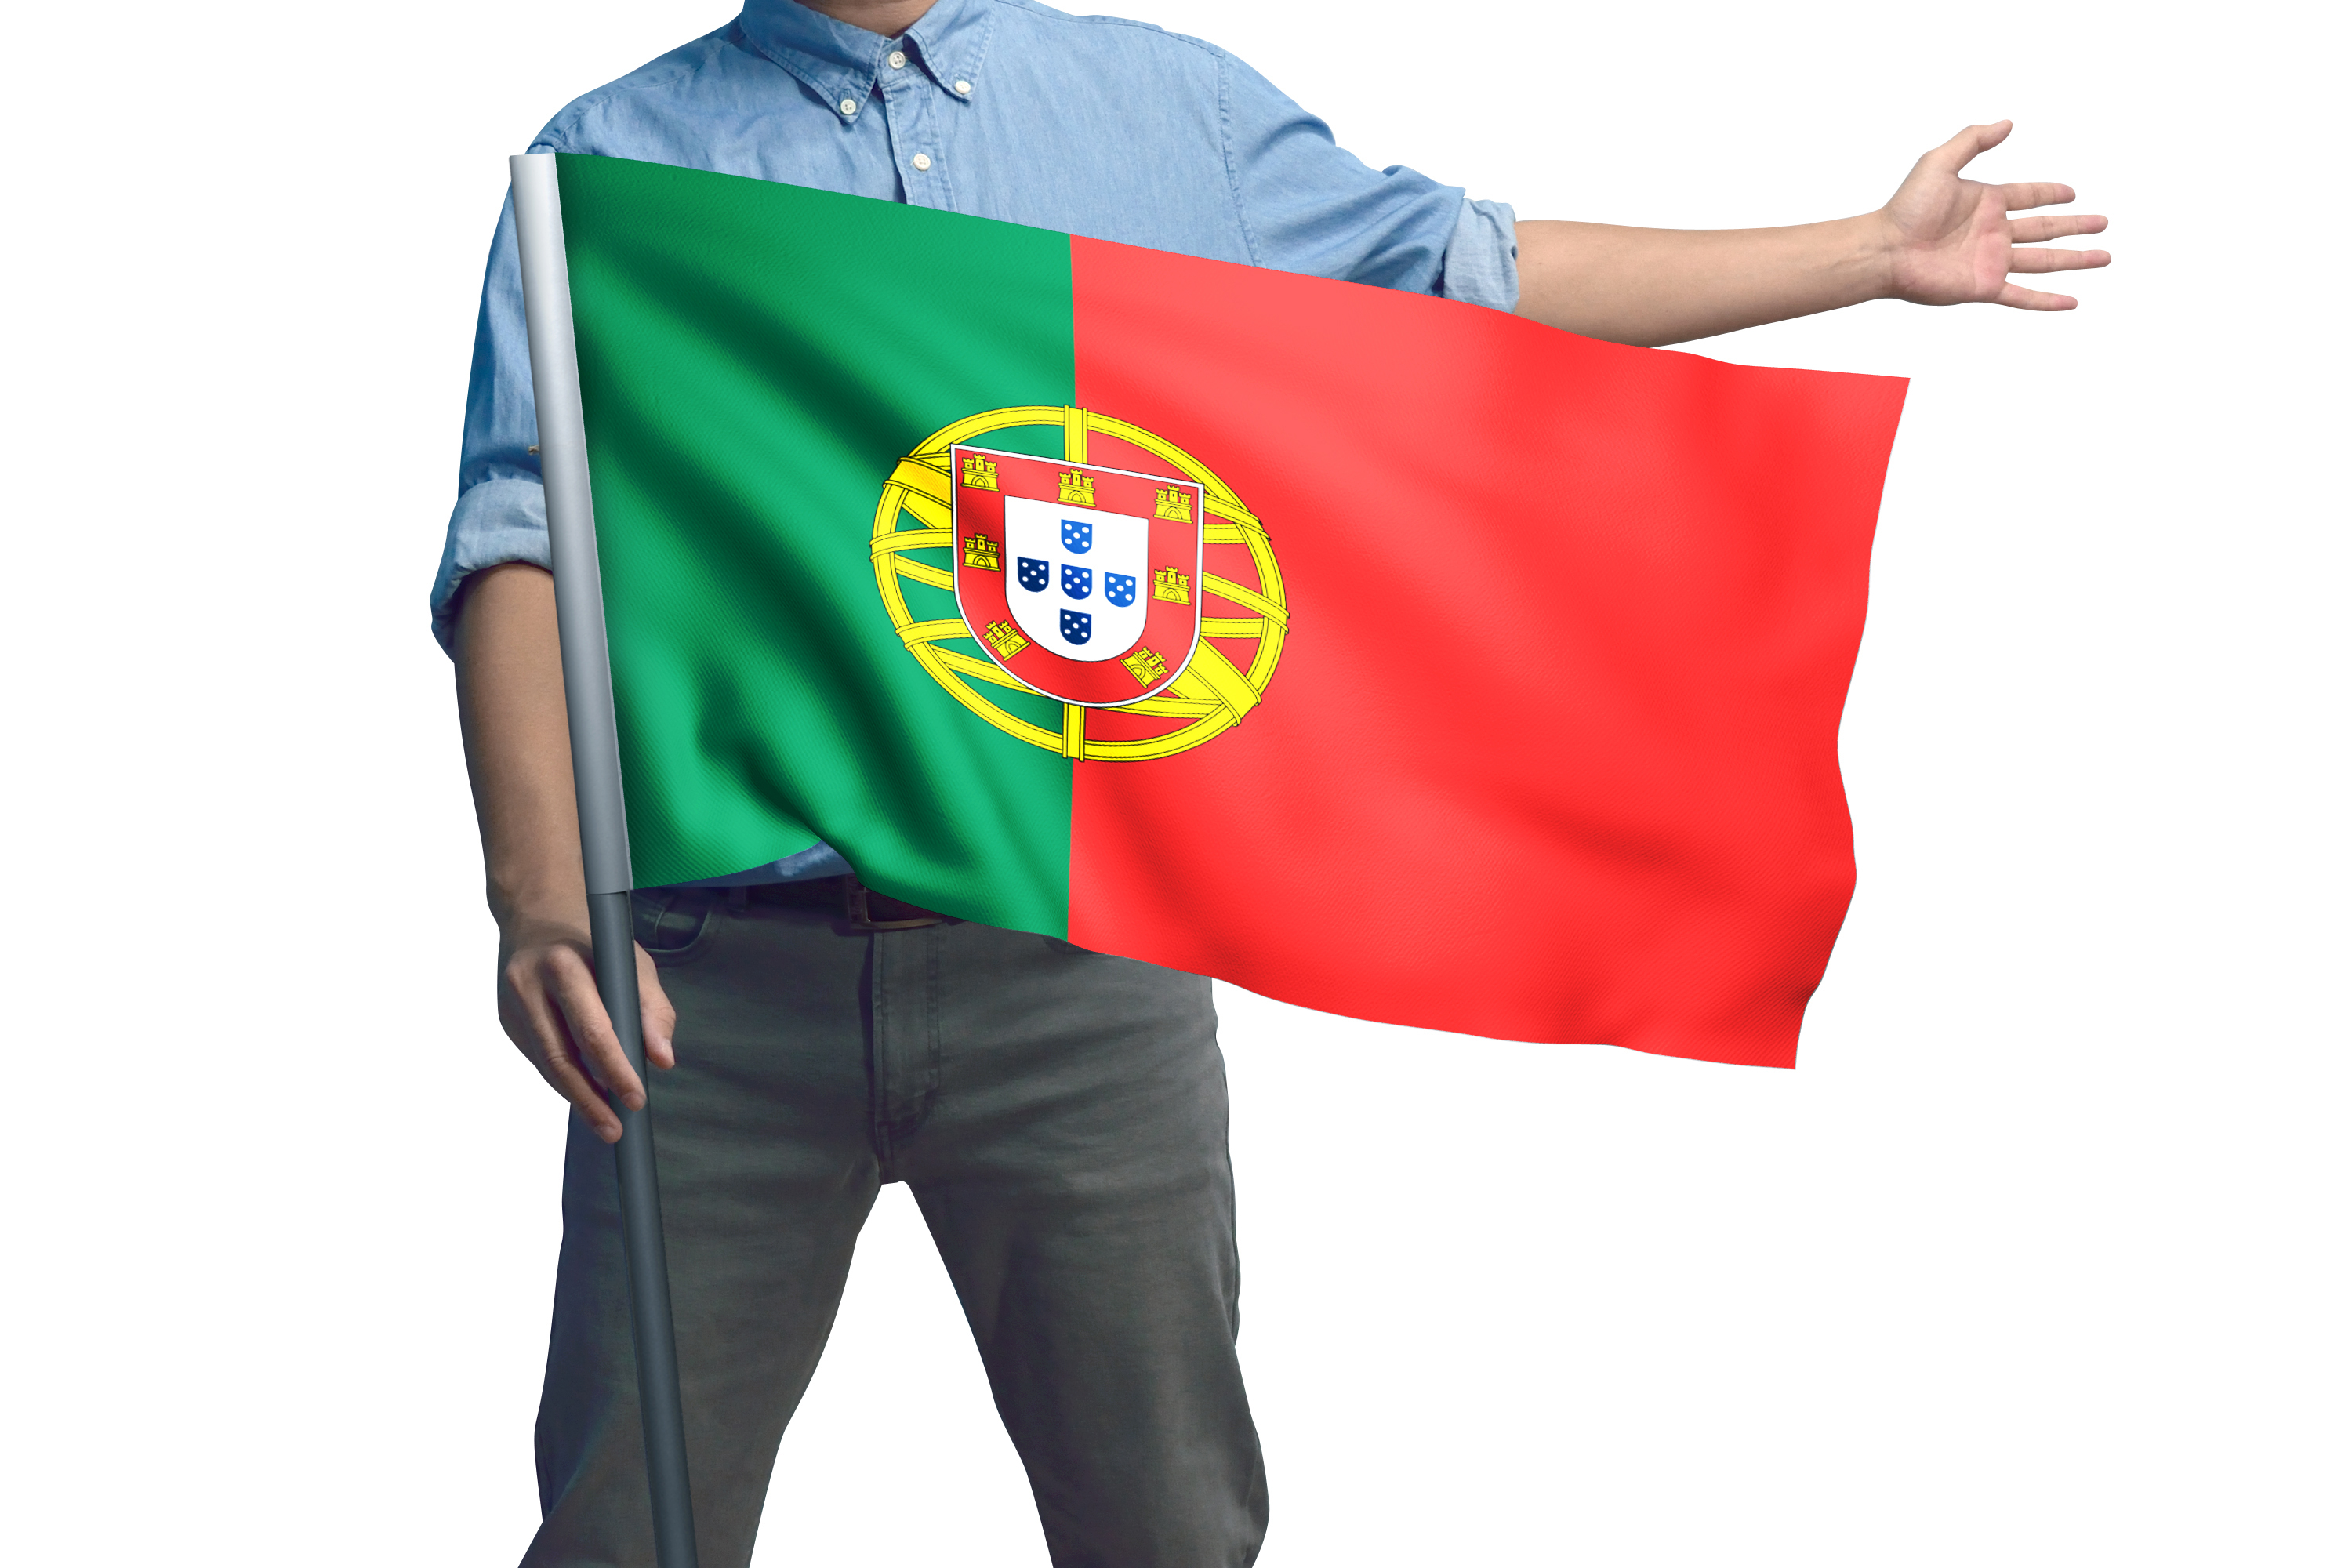 Работа и образование в португалии: средняя зарплата, перспективы, стажировки